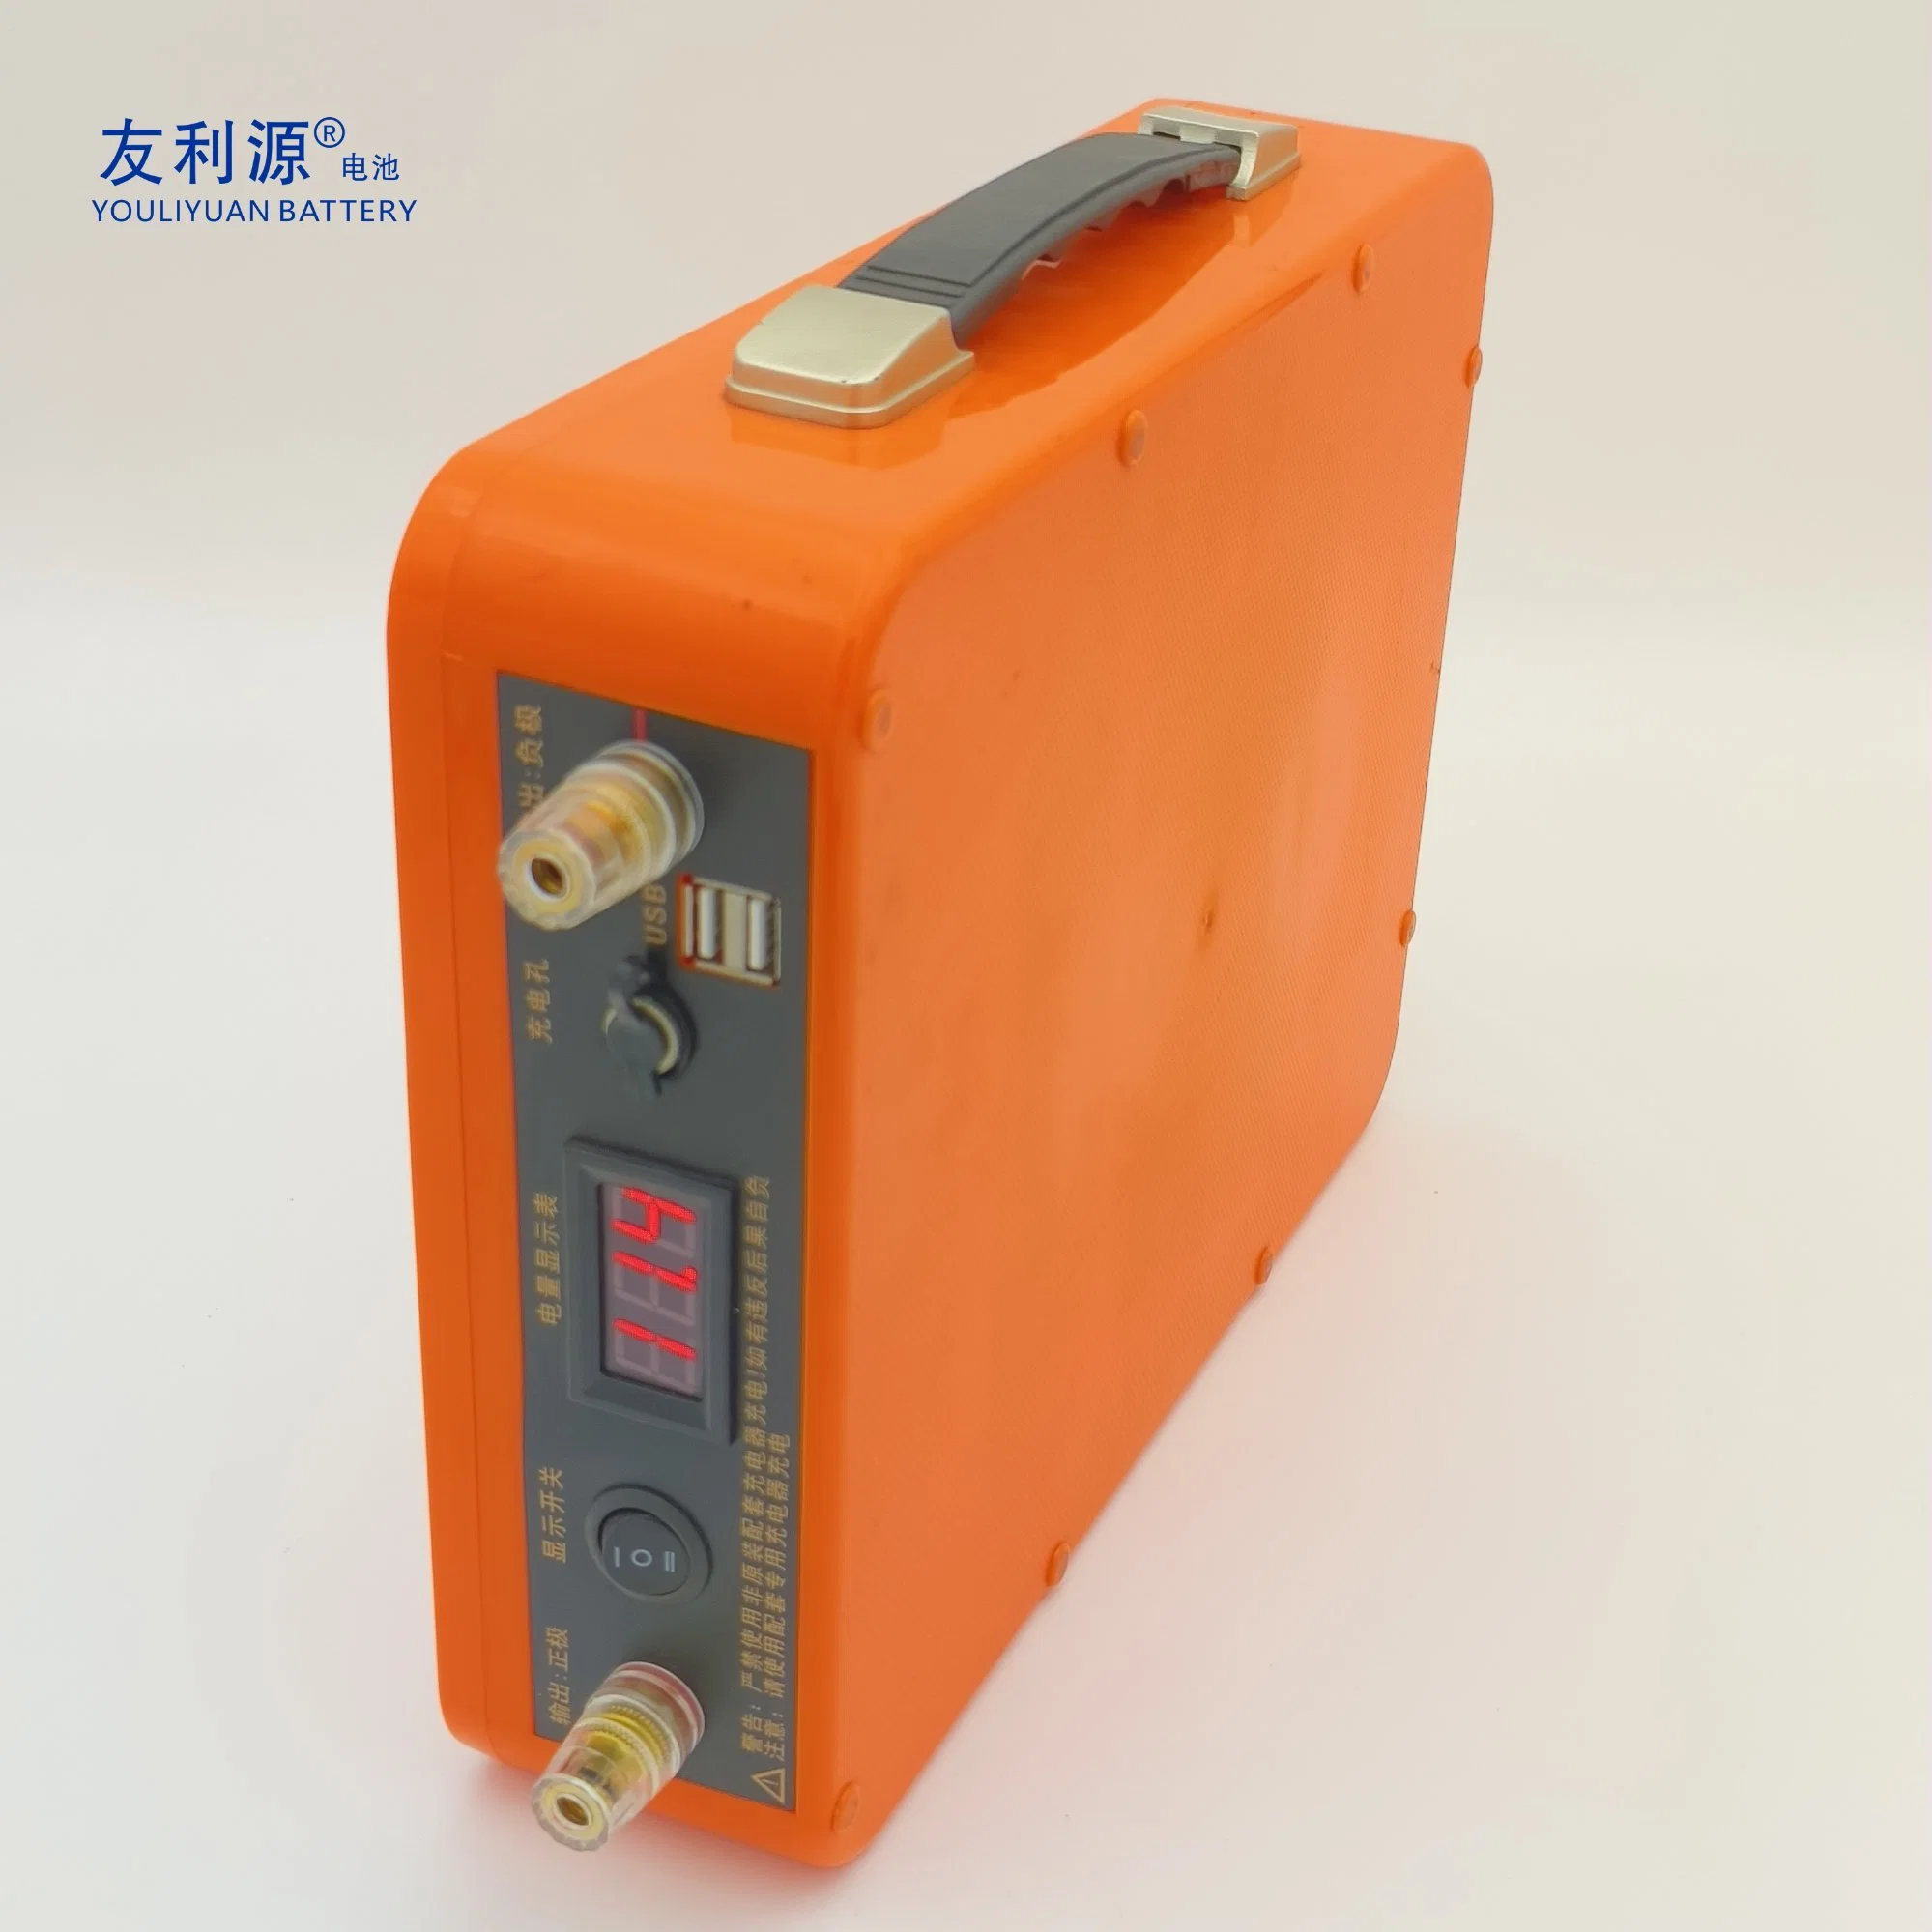 Usine/Fabricant de batteries OEM Power 18650 3s40p 11.1V80ah 888wh Pack de batteries lithium-ion 12V 18650 pour système de stockage d'énergie avec BMS/PCB et interrupteur.